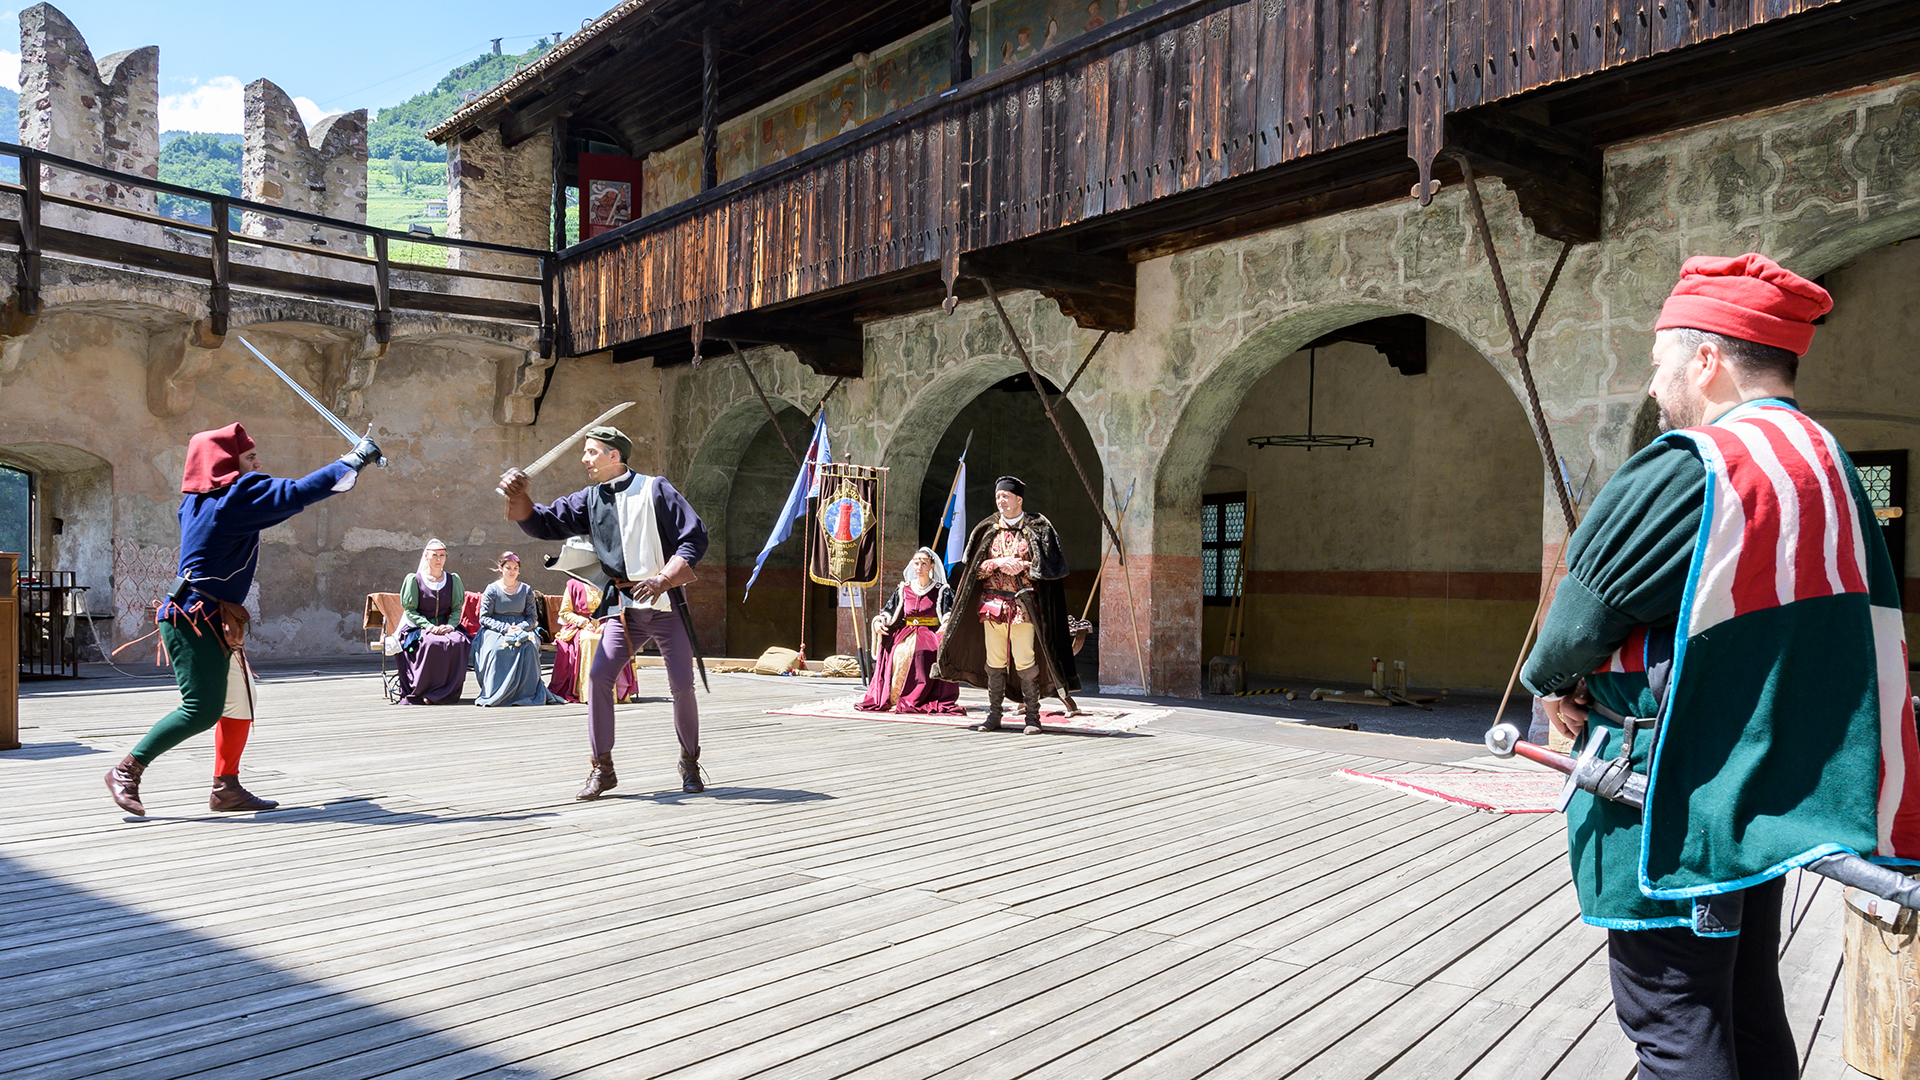 In un spettacolo all'aperto, nel quale due attori vestiti con dei costumi fedeli alla tradizione recitano un duello, i visitatori possono conoscere meglio la storia e la cultura di Bolzano. 